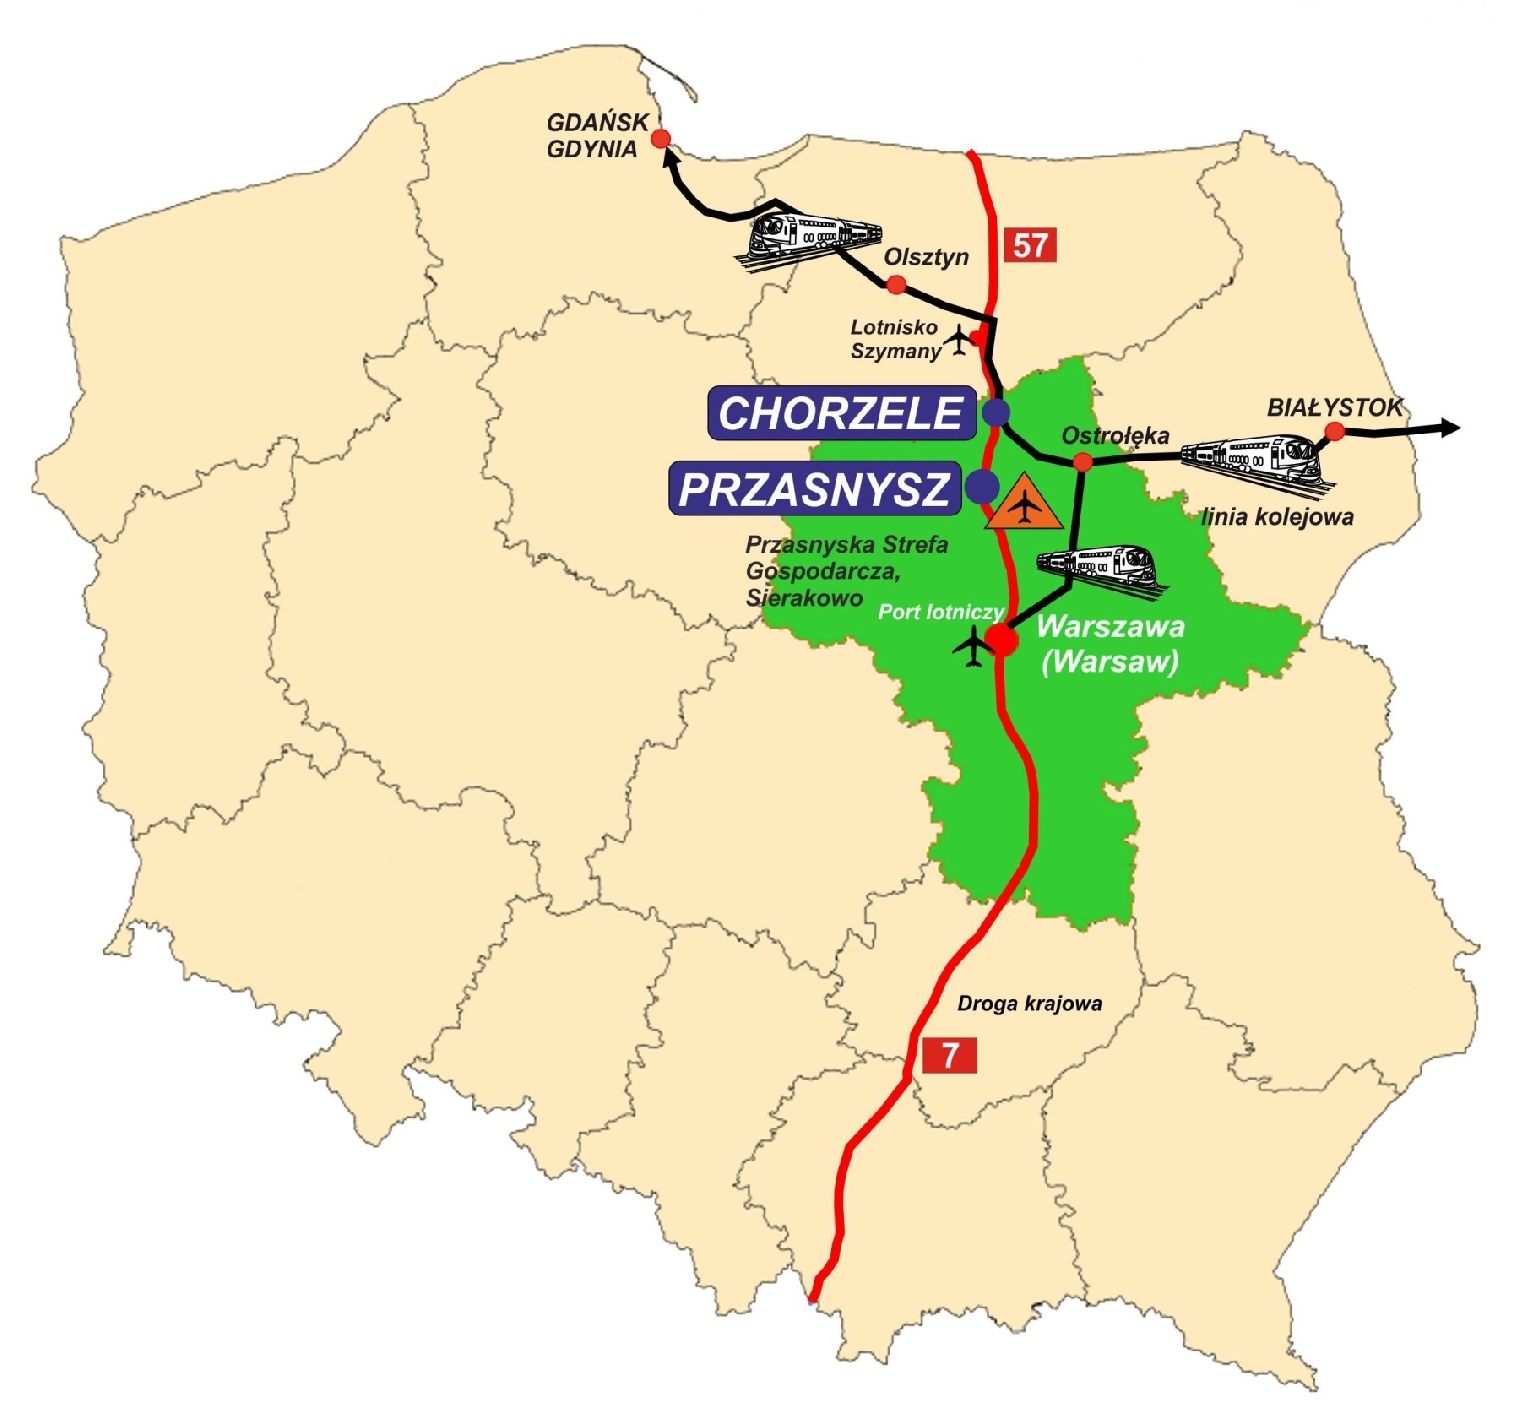 Uproszczona mapa administracyjna Polski z zaznaczonym na zielono Mazowszem, miastami Przasnyszem i Chorzelami oraz najważniejszymi traktami komuniakcyjnymi